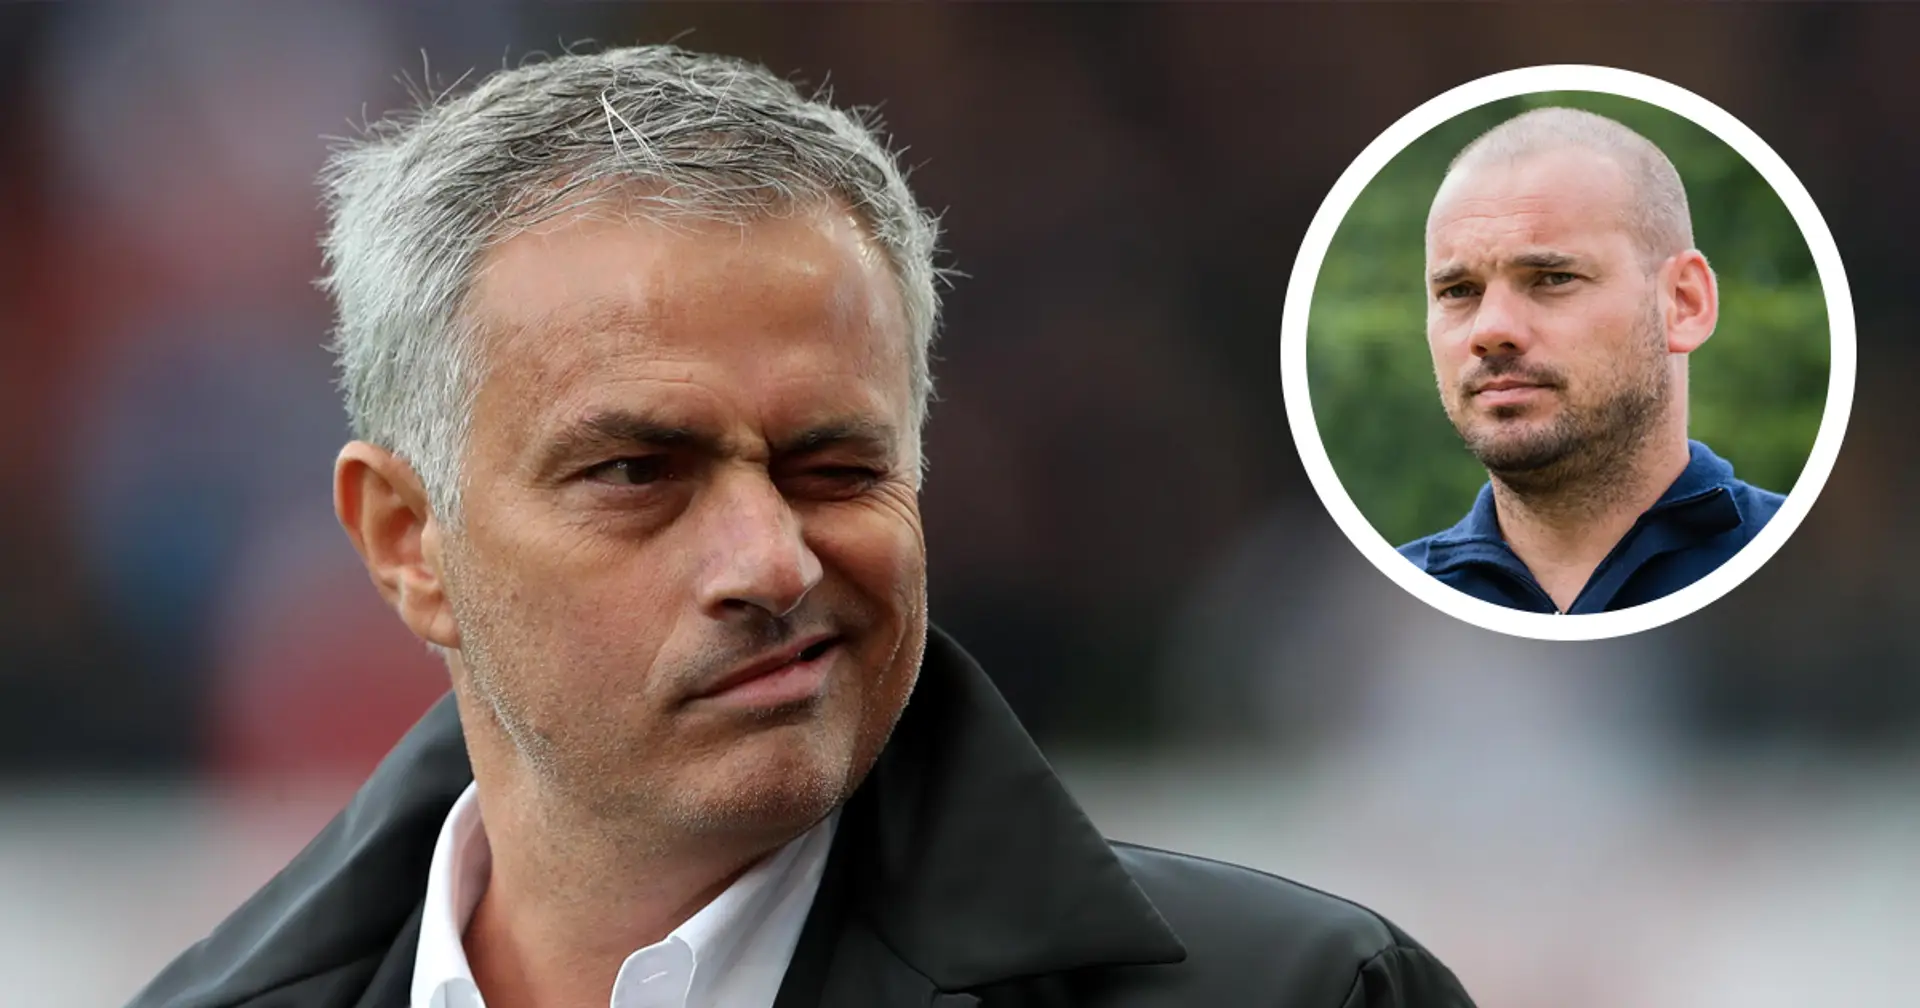 "È un allenatore unico": Sneijder conosce bene Mourinho ed è ottimista per l'esperienza alla Roma